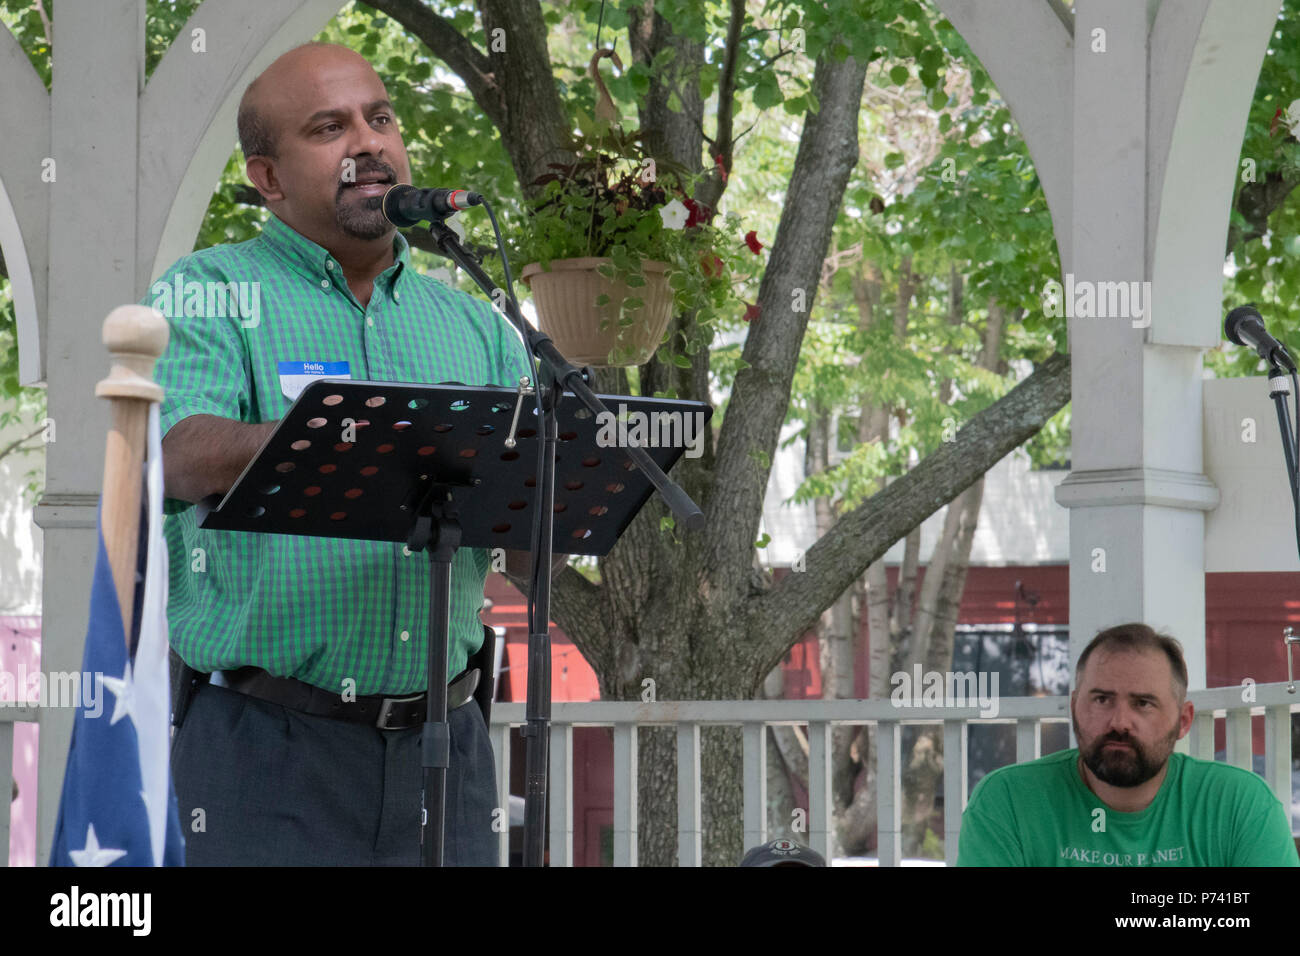 KEENE, NEW HAMPSHIRE/USA - 30. Juni 2018: Mohammad Saleh von Keene spricht bei einer Familien gehören zusammen Rallye organisiert die Einwanderung Polizeiaufgebot zu protestieren Stockfoto